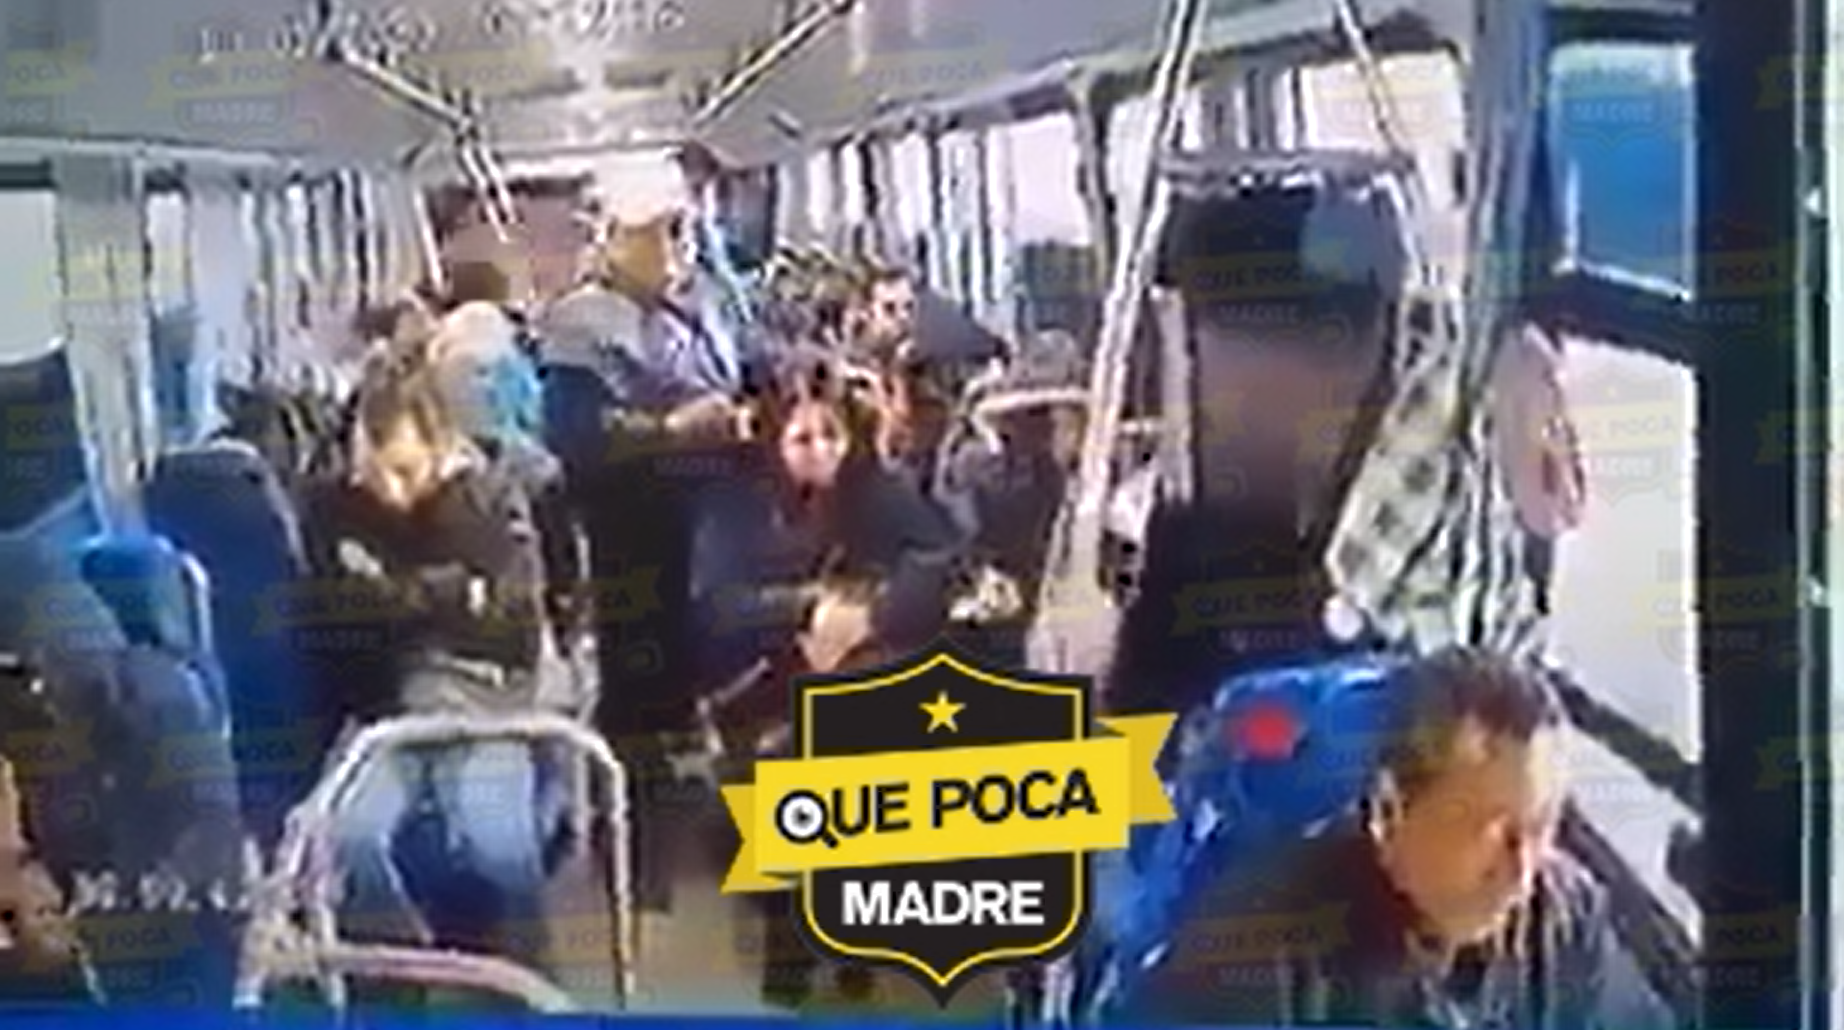 #Tecámac: Cámaras de videovigilancia captan asalto en una unidad del transporte público.